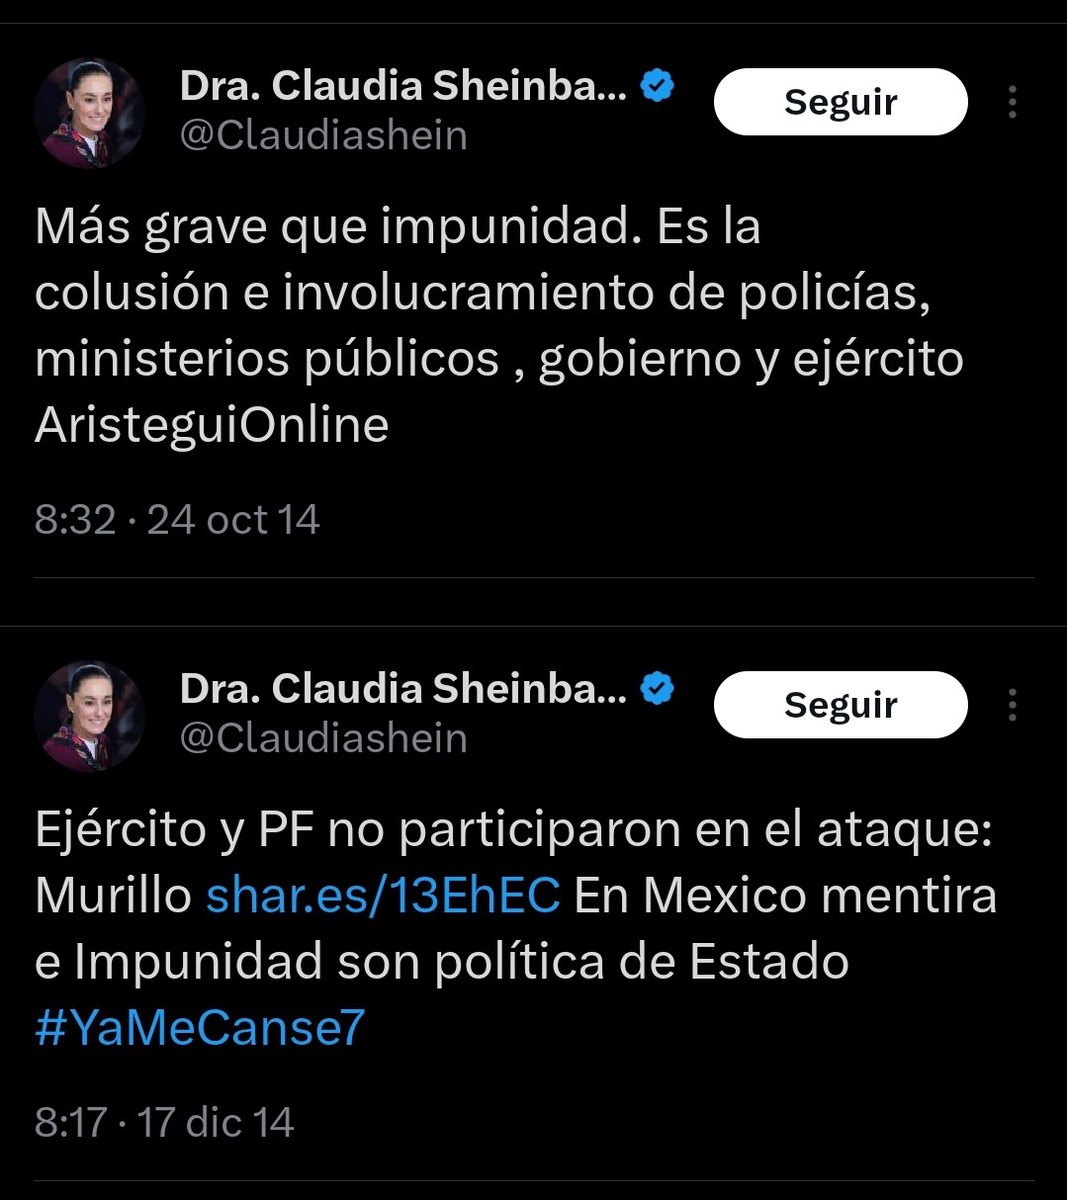 Siempre hay un tweet o una 'X'..

Miren.. 

Se le 'cayeron' estos tweets del 2014 a Claudia Sheinbaum

Ella TAMBIÉN culpó al Ejército de lo sucedido en Ayotzinapa.

#AyotzinapaNoSeOlvida
#2deOctubre

👇